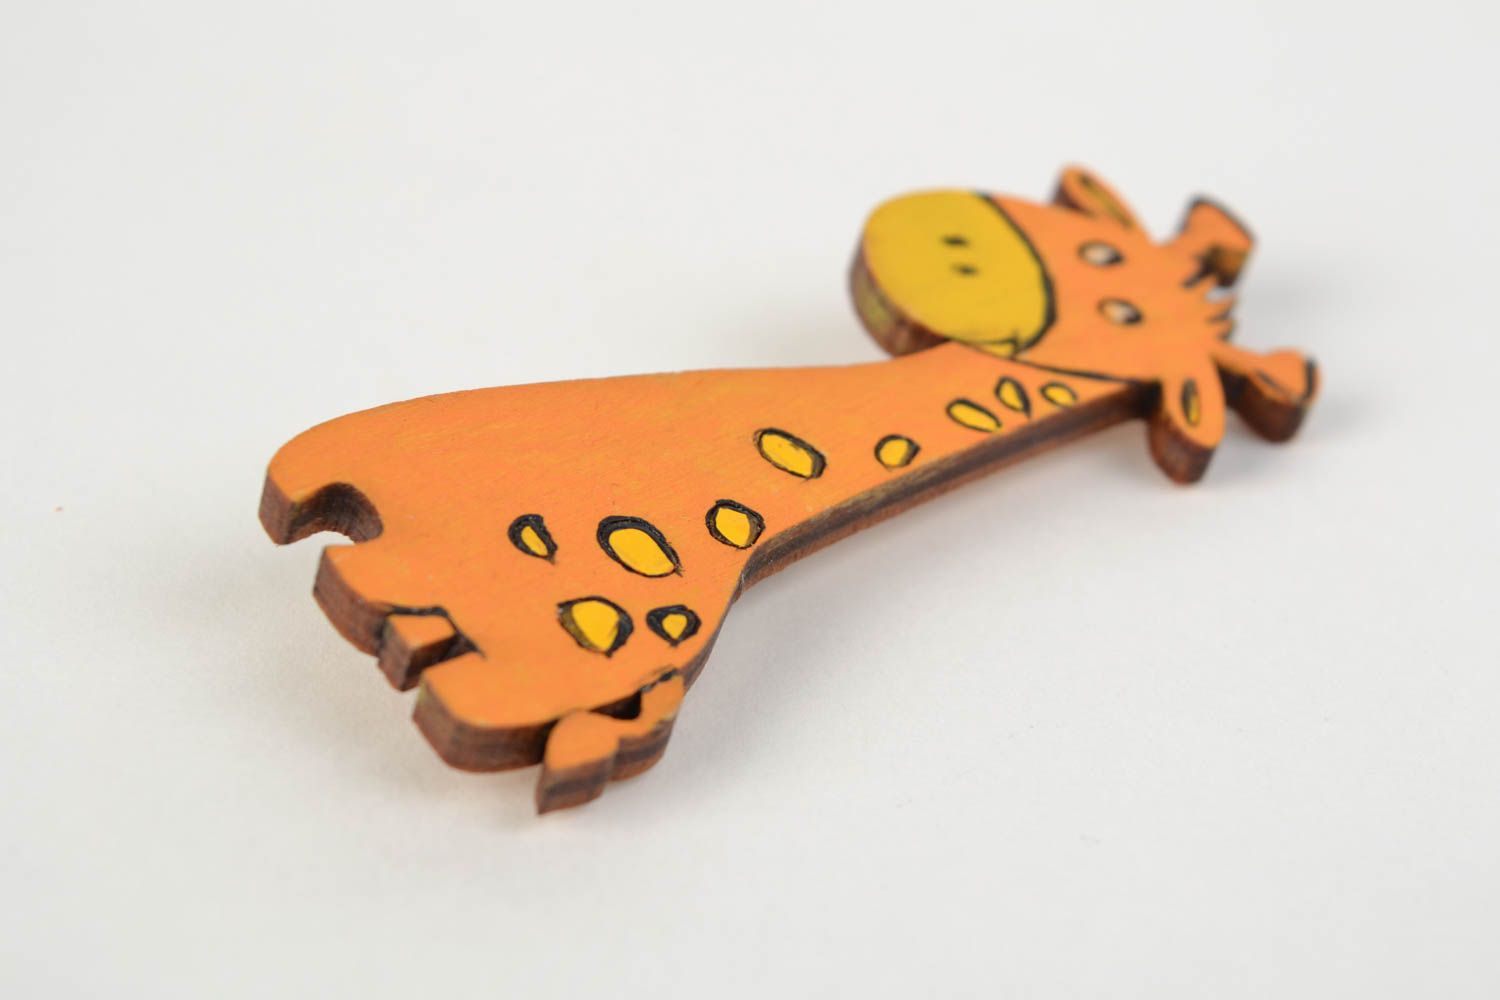 Originelle Kinder Brosche aus Holz in Form von Giraffe handmade mit Acrylfarben bemalt foto 5